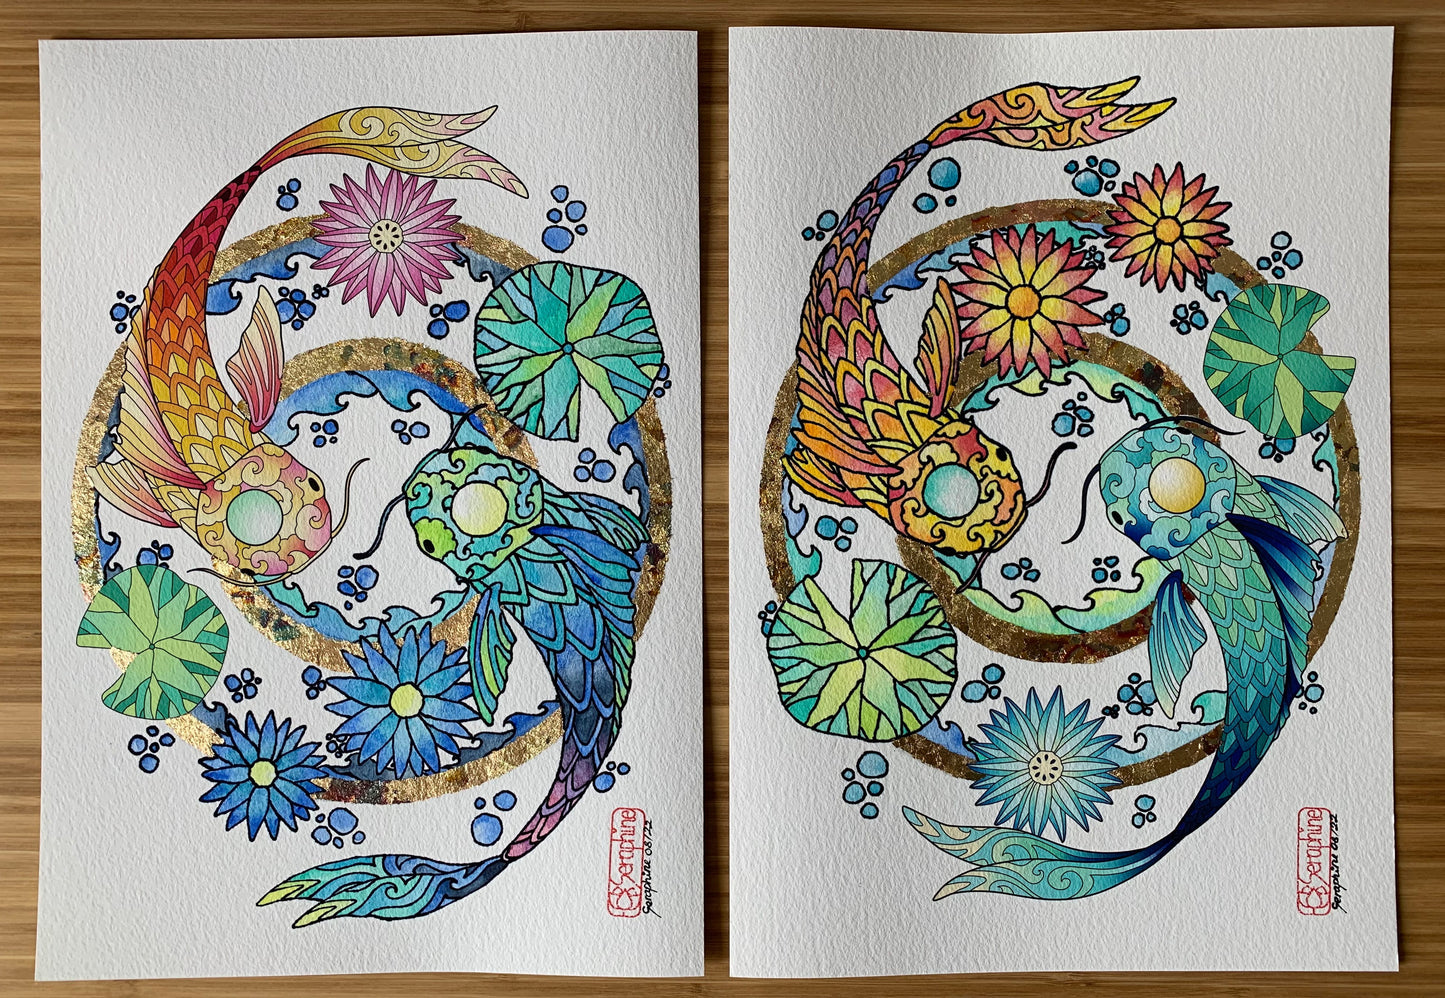 Ein Set aus zwei Illustrationen nebeneinander, die jeweils zwei sich umschwimmende Kois zeigen